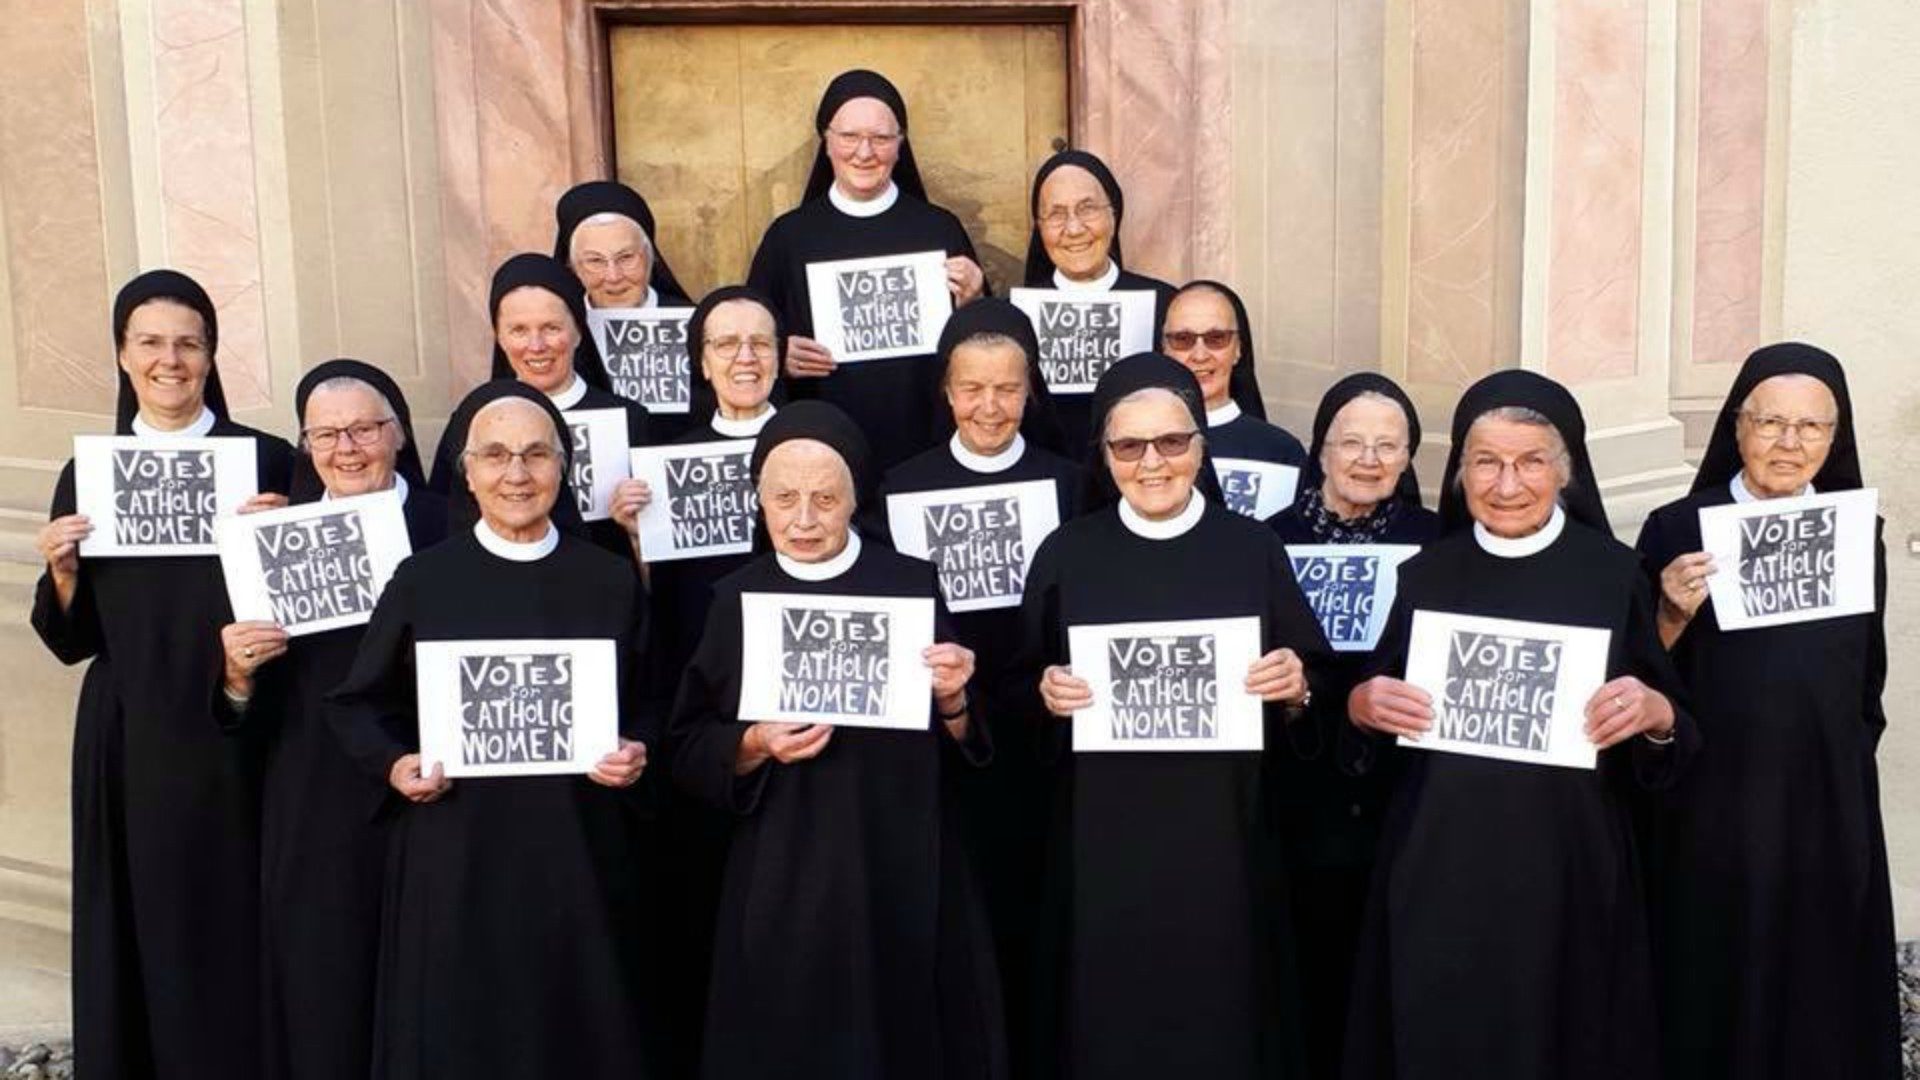 Des religieuses de l'abbaye de Fahr (AG) se mobilisent pour le vote des femmes au synode (Photo:Facebook)